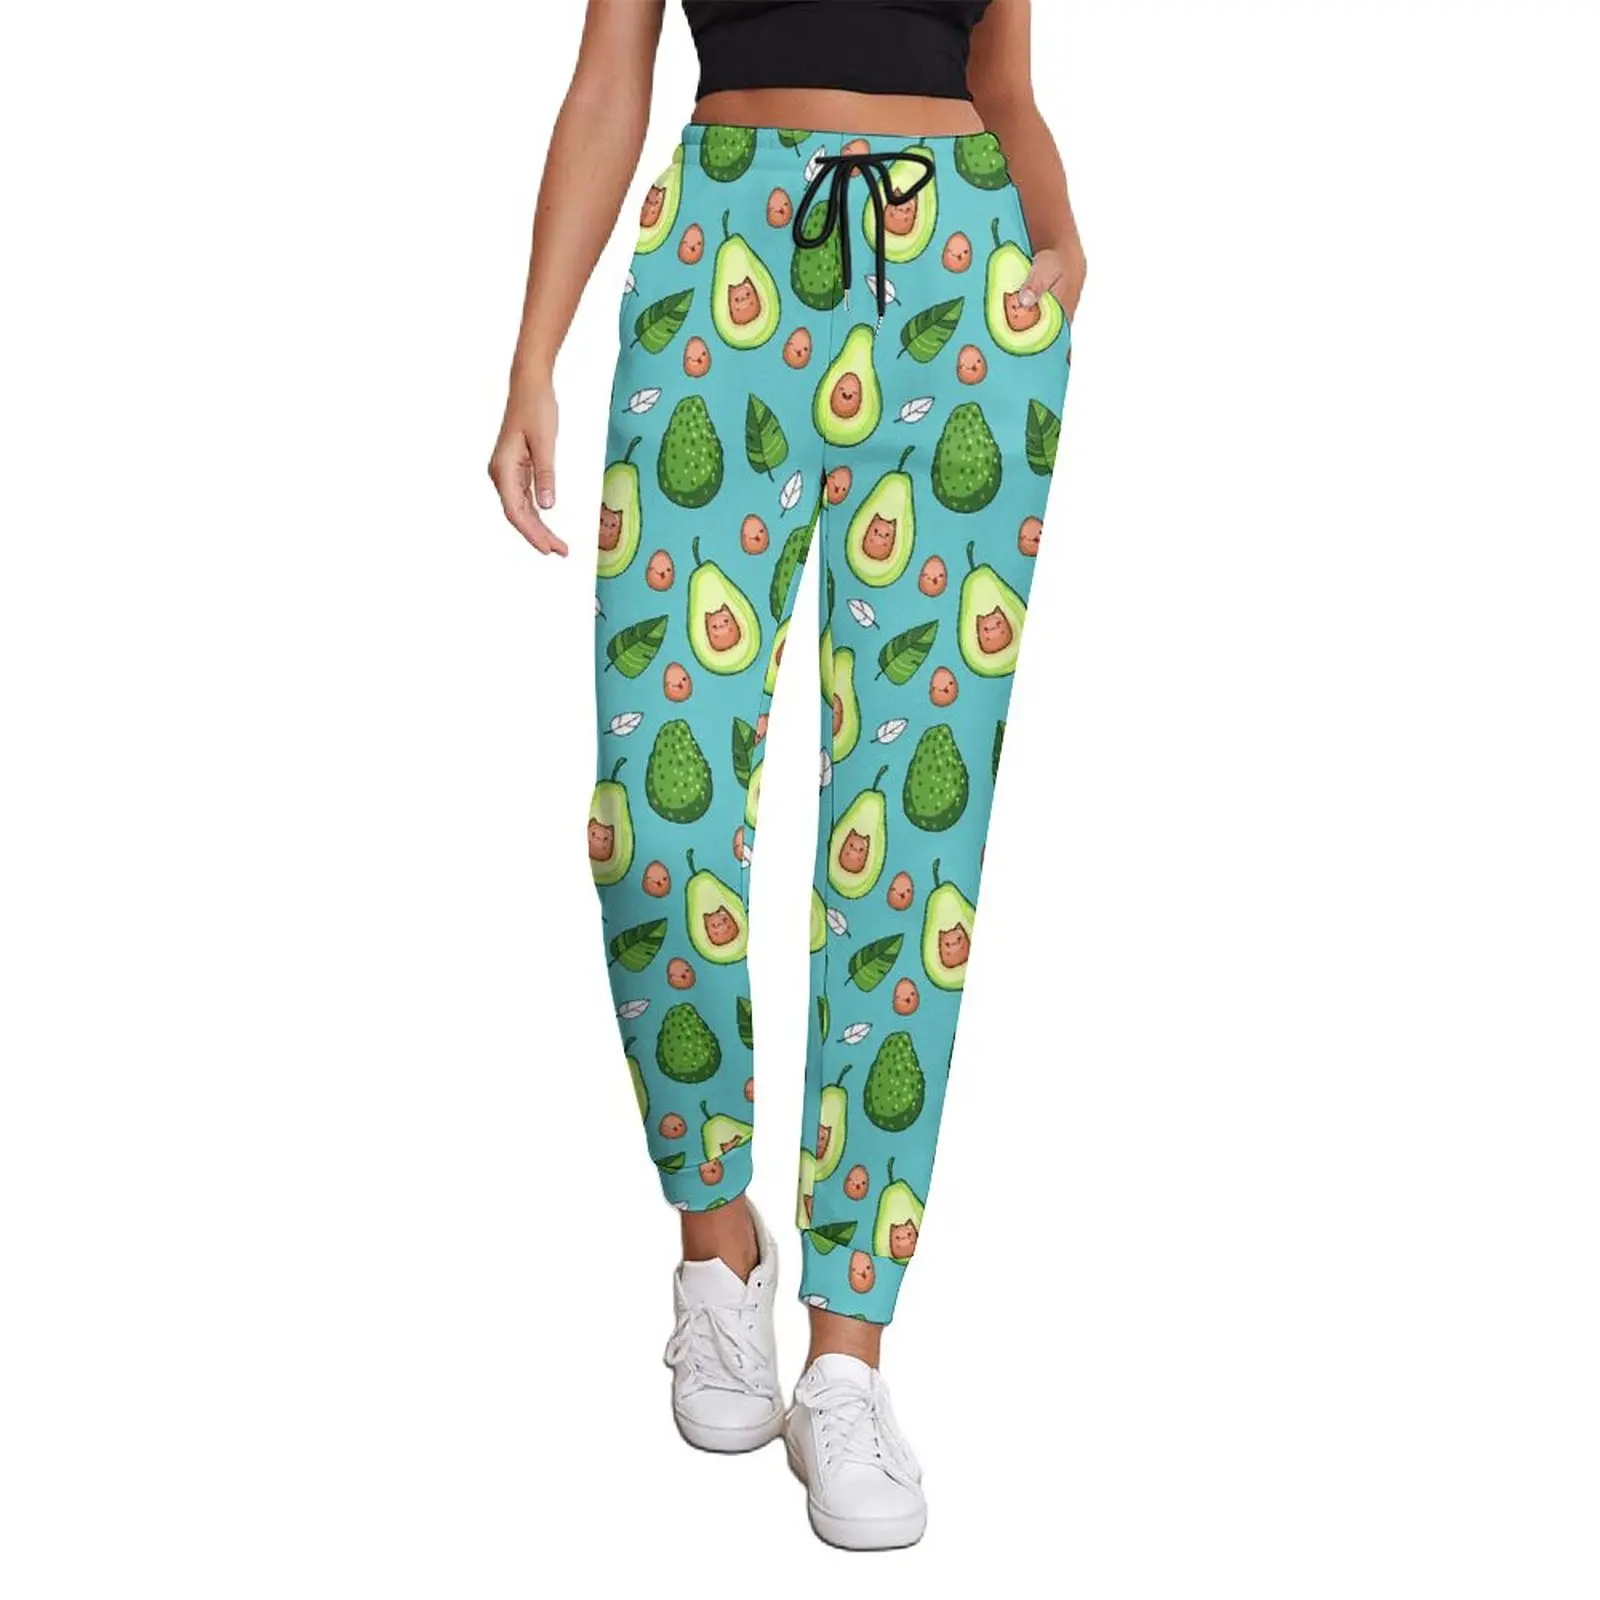 

Женские Мешковатые брюки авокадо, уличная одежда с принтом зеленых фруктов, джоггеры, весенние модные брюки с узором, большой размер 2XL